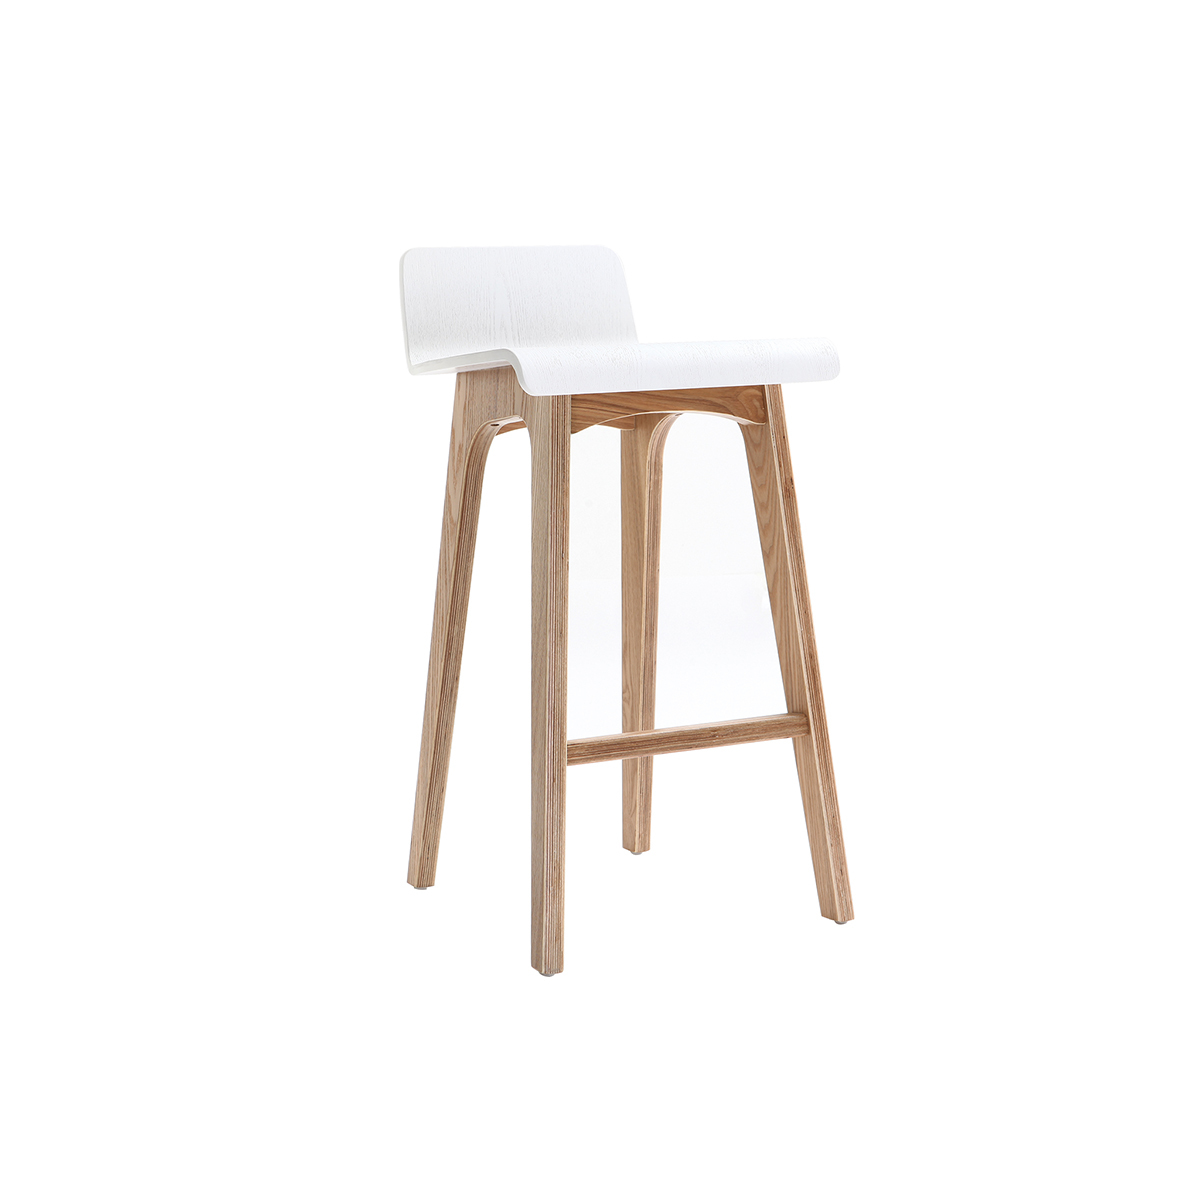 Chaise de bar scandinave bois et blanc H65 cm BALTIK vue1